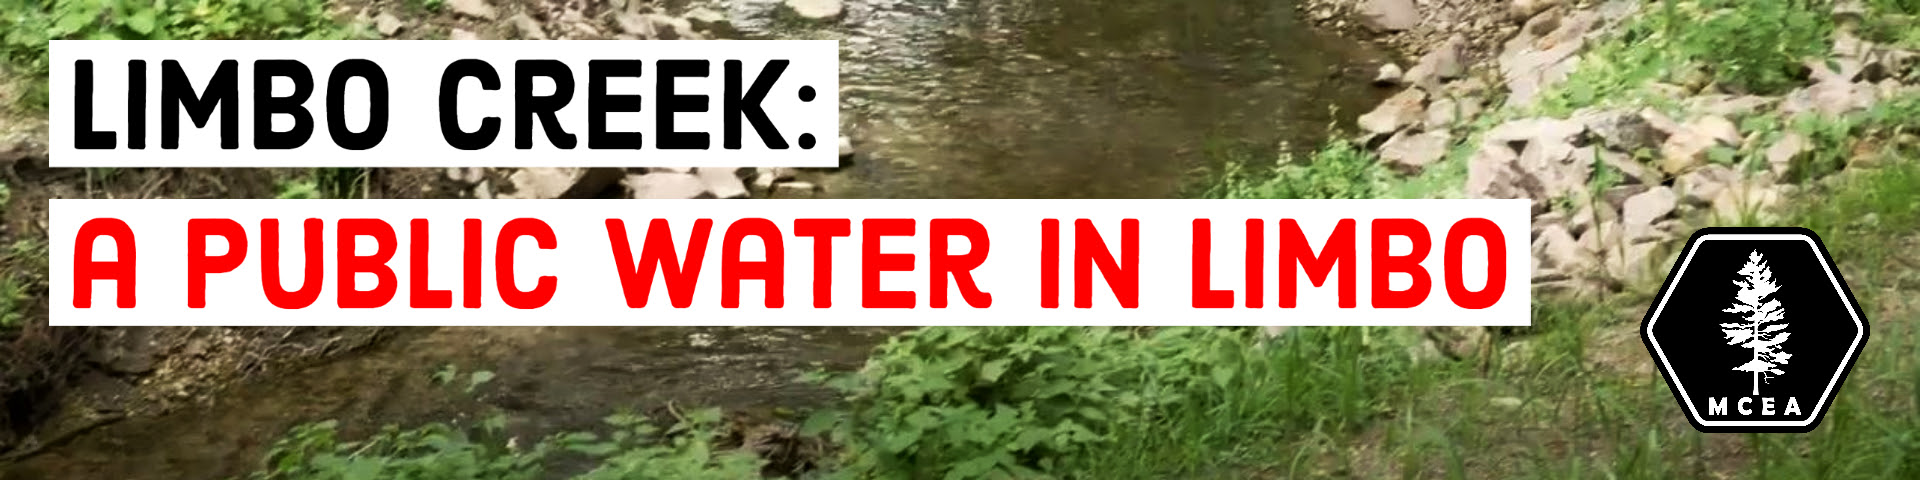 Limbo Creek: A public water in limbo